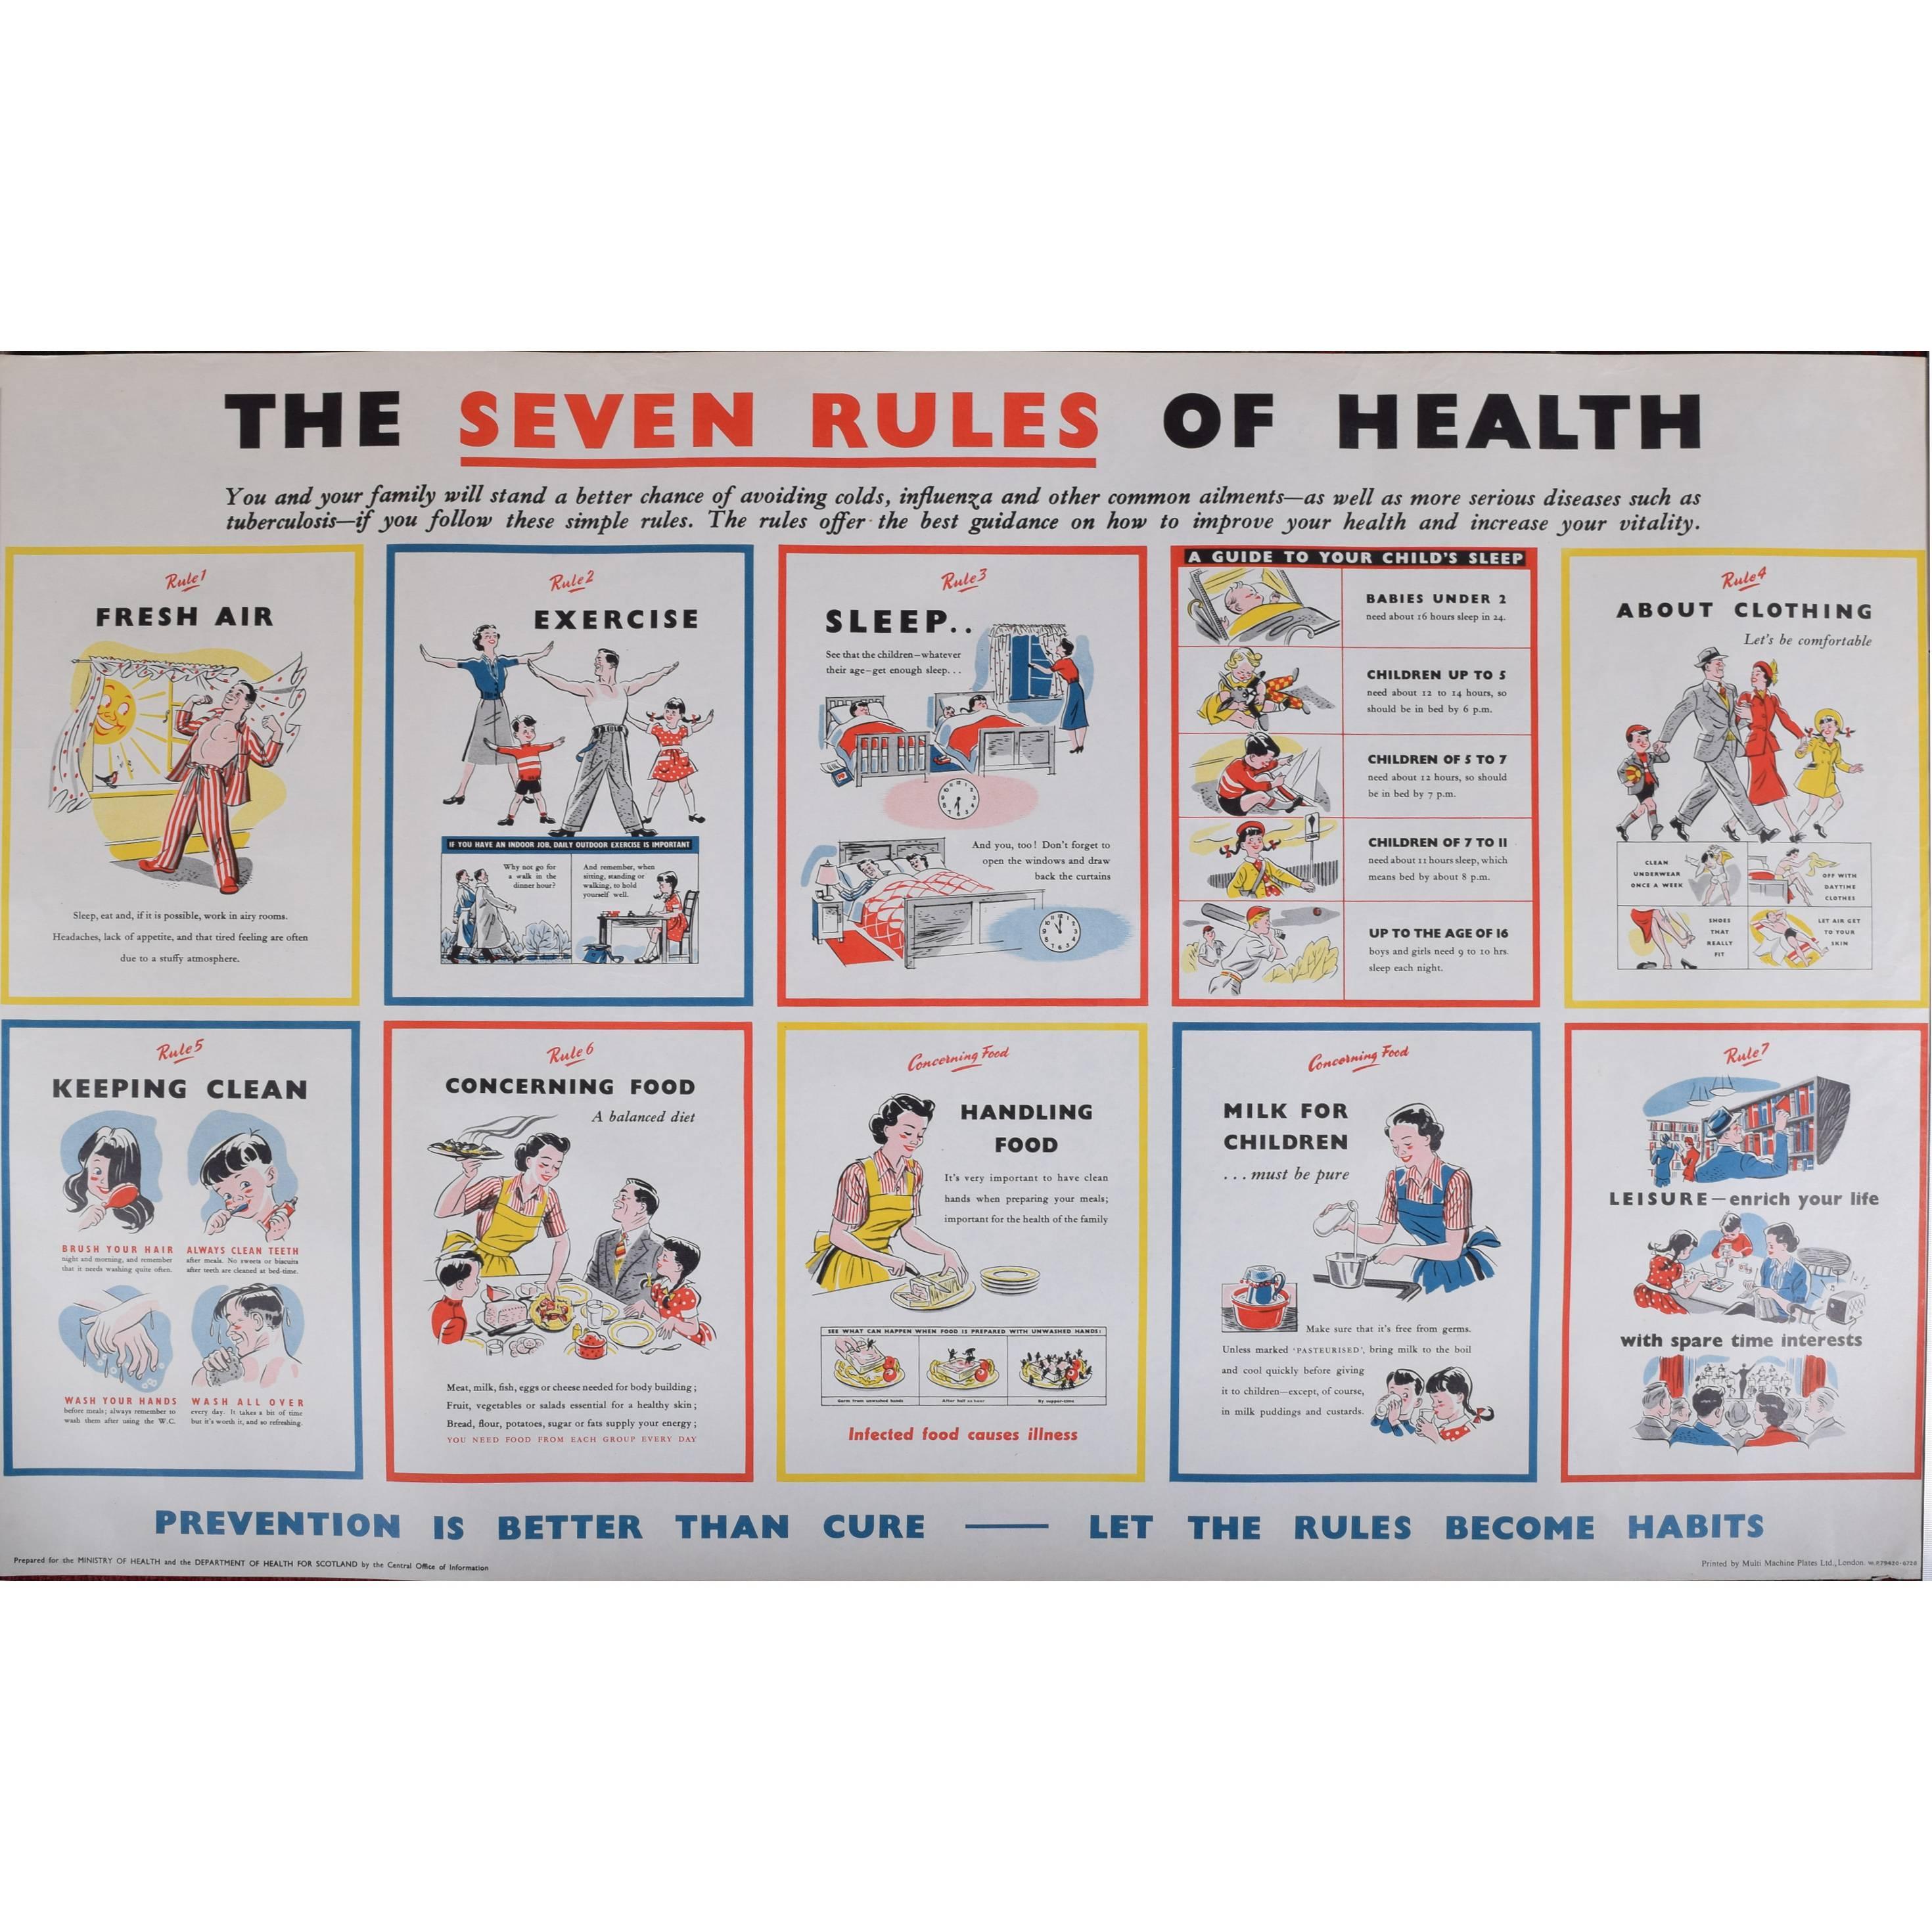 Unknown Print – Großbritannien: Propagandaplakat „The Seven Rules of Health“ der britischen Regierung, HMSO, um 1950